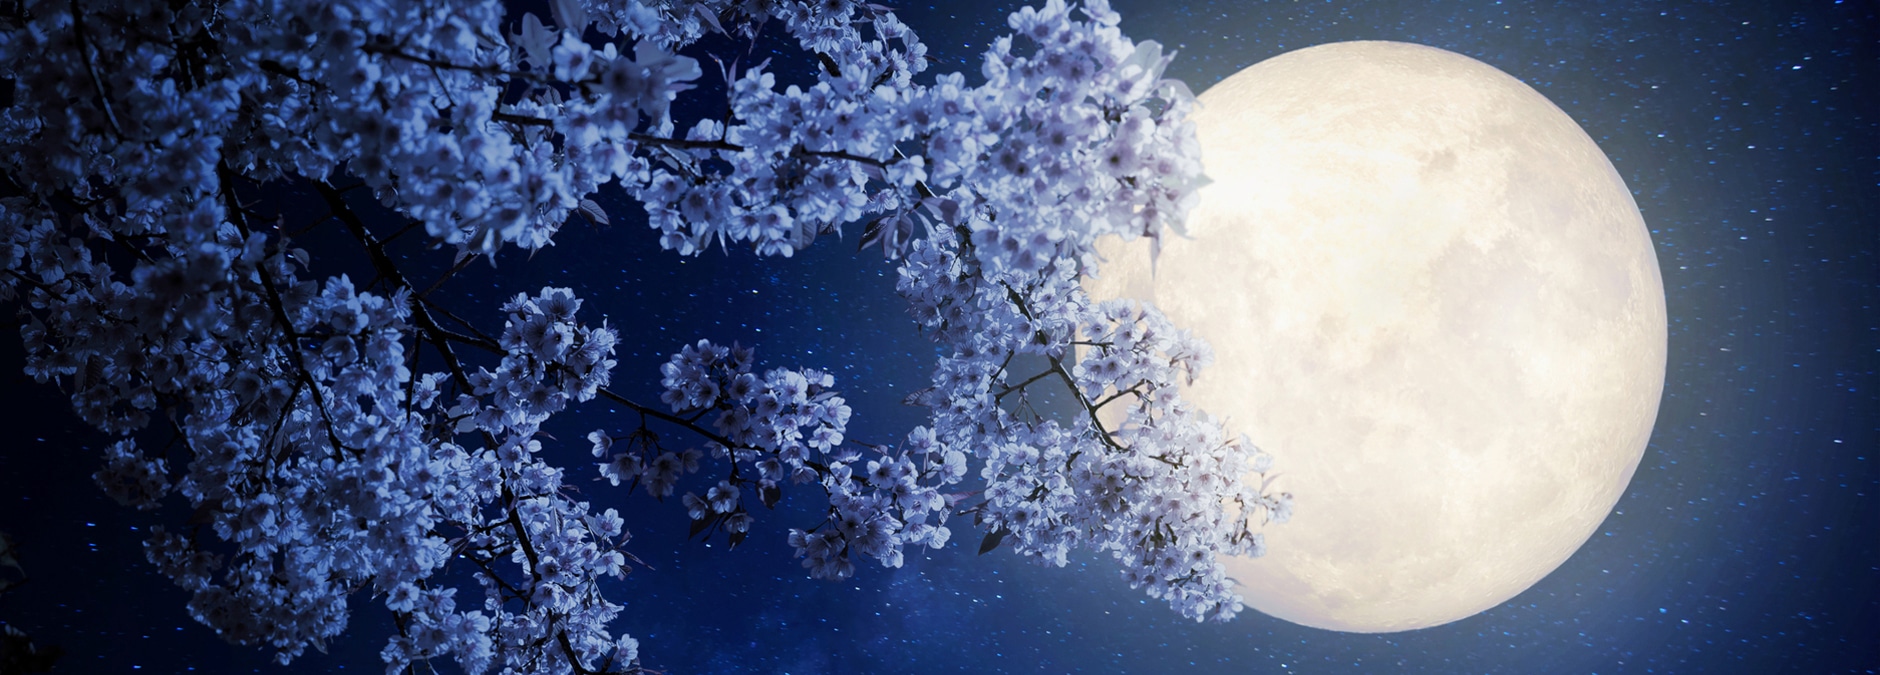 maggio 2020 superluna luna dei fiori flower moon zed news